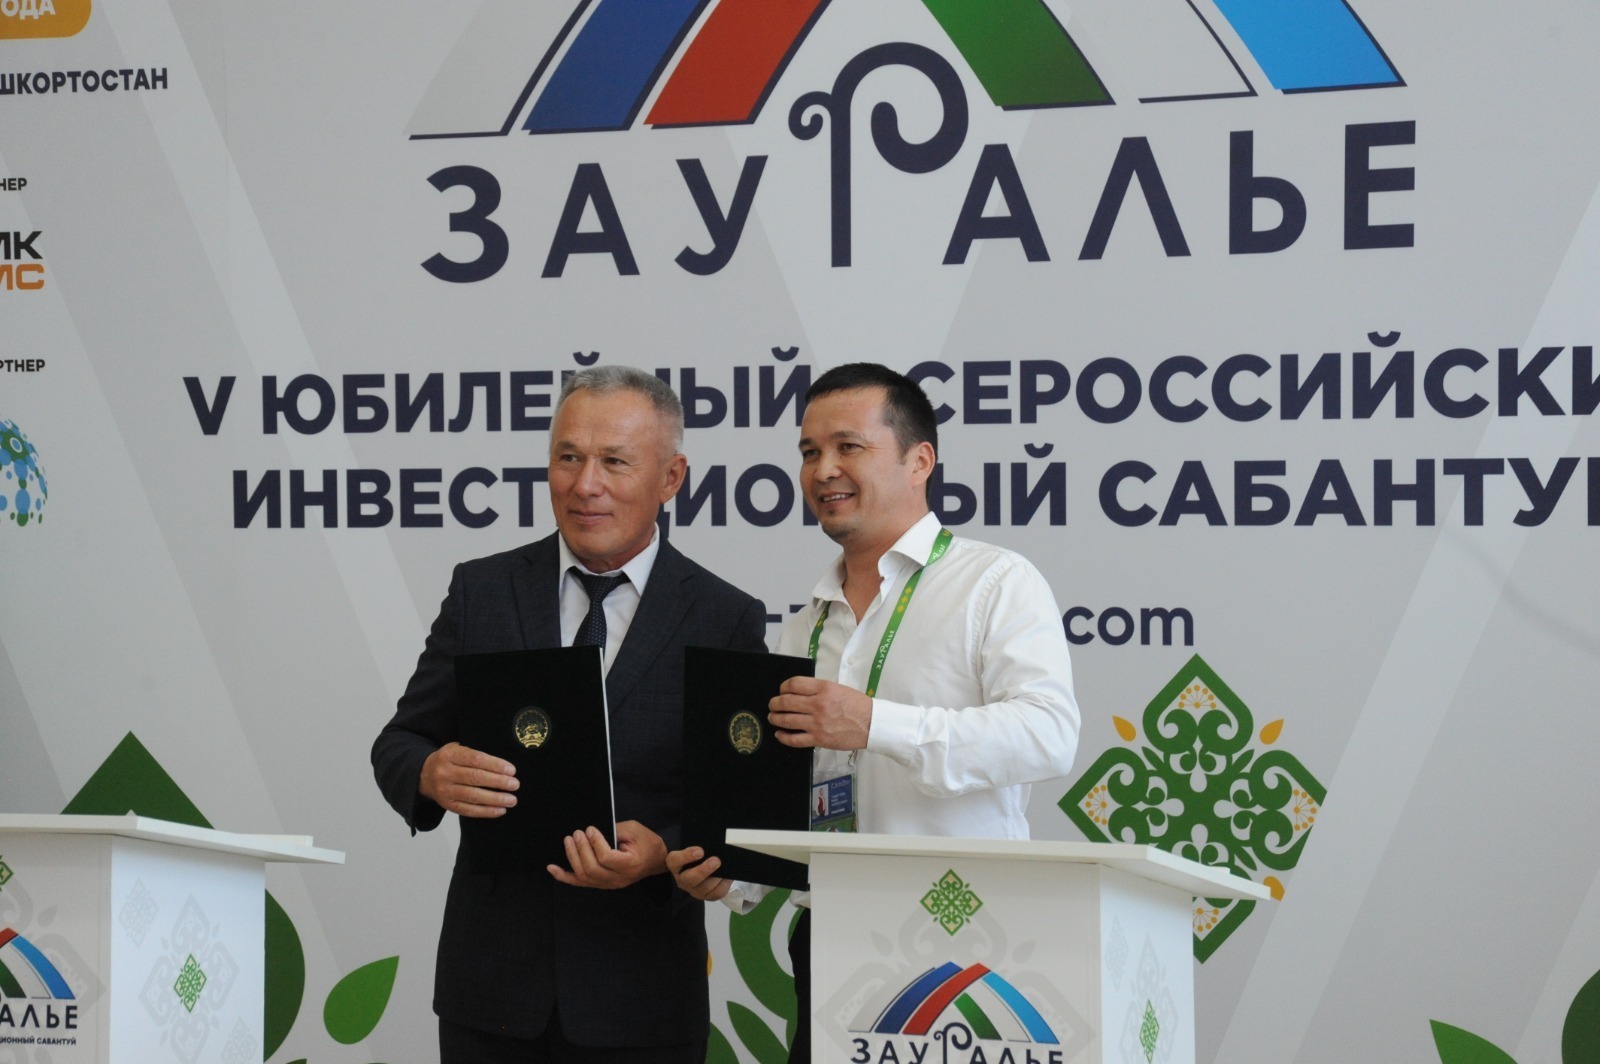 В Башкирии пройдёт всероссийский инвестсабантуй «Зауралье»